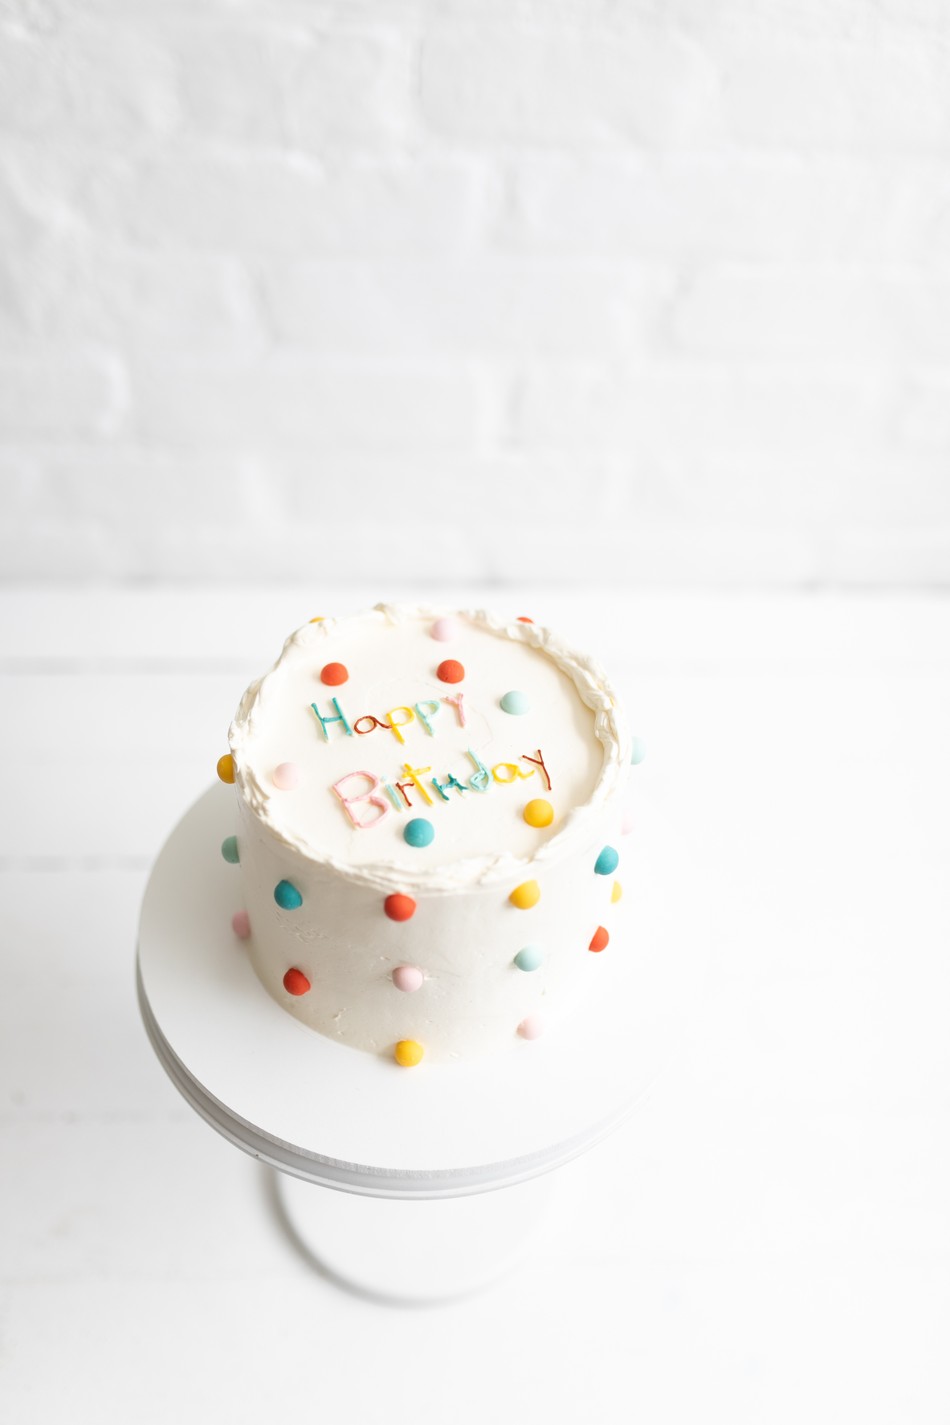 poá cake (happy birthday)